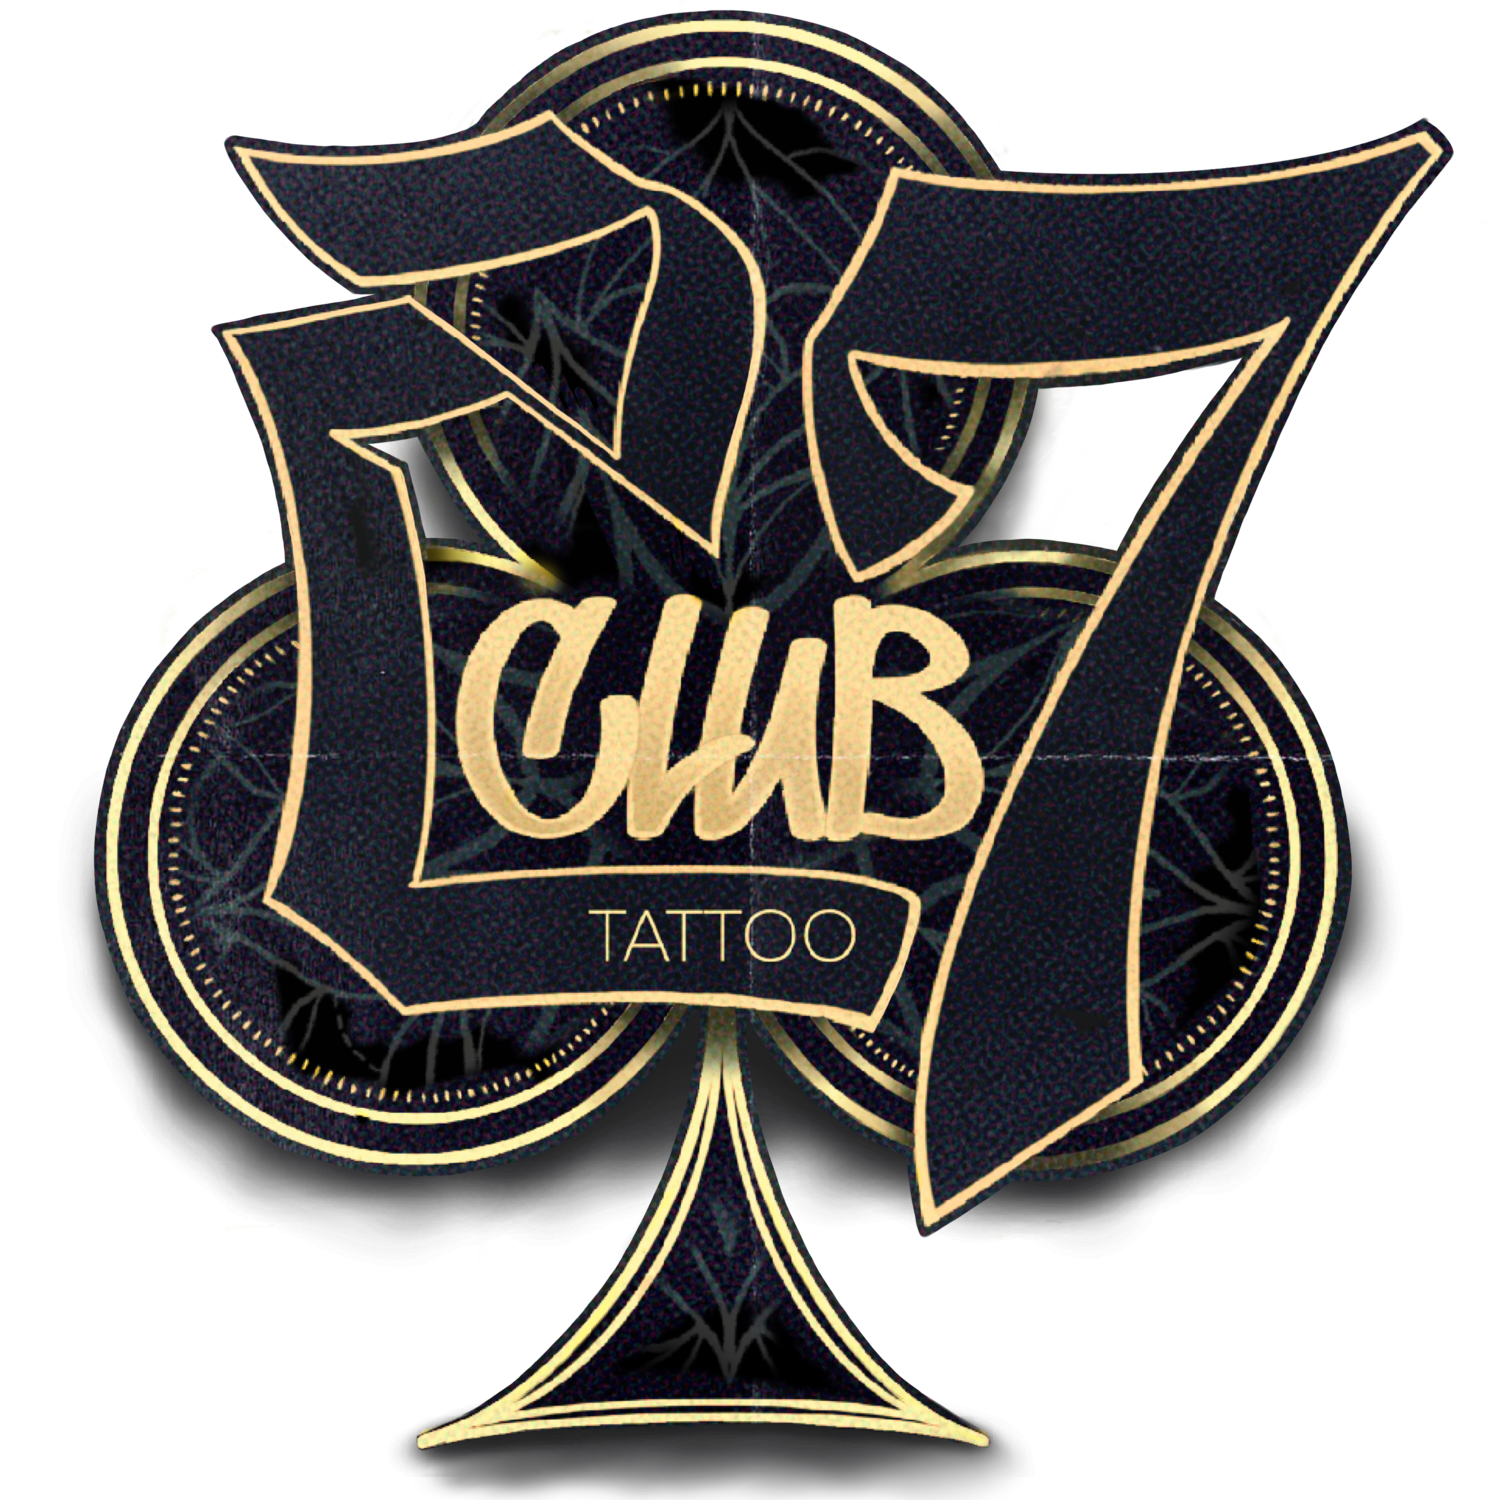 The 27 Club Tattoo